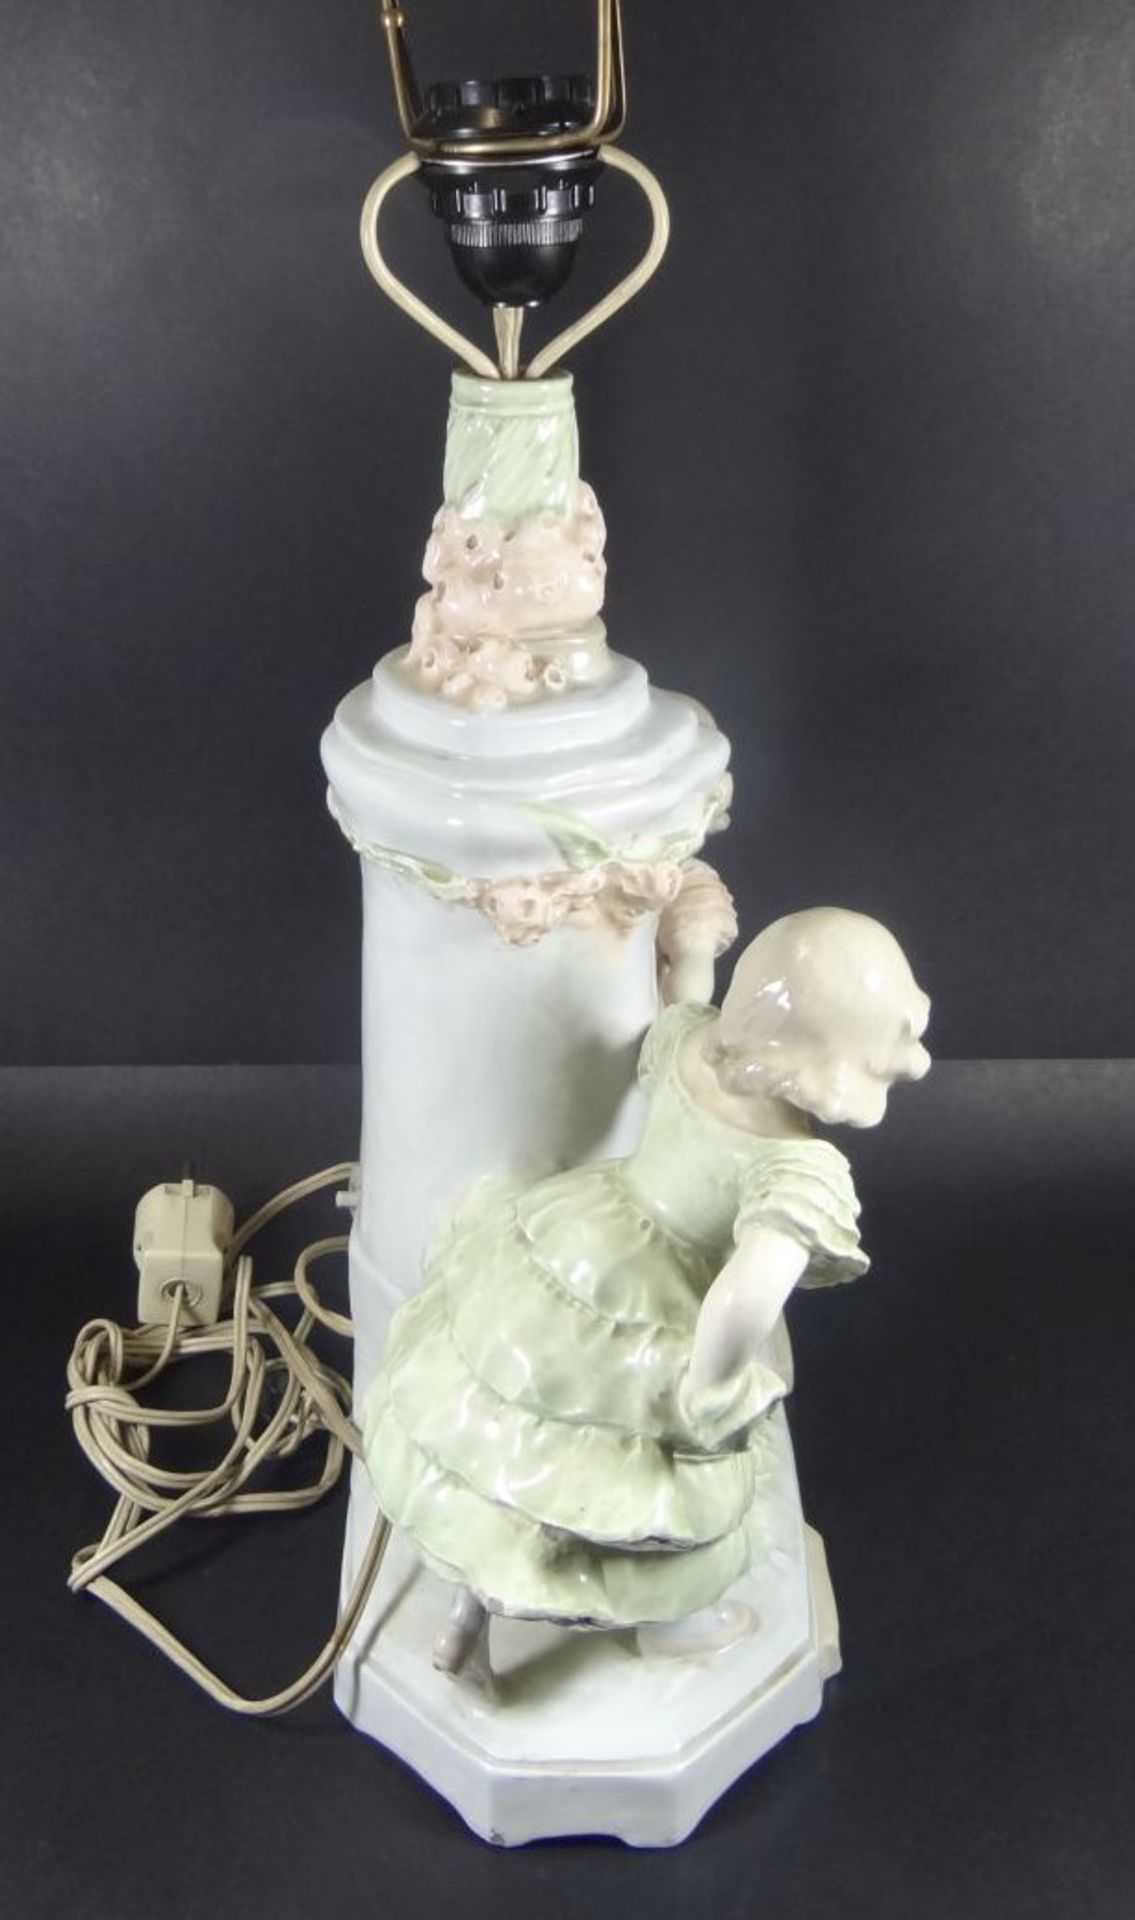 gr. Tischlampe mit figürlichen Stand, bemalt, nur Mod. Nr. 7805, ein Mädchen Nase bestossen, H-60 c - Bild 6 aus 9